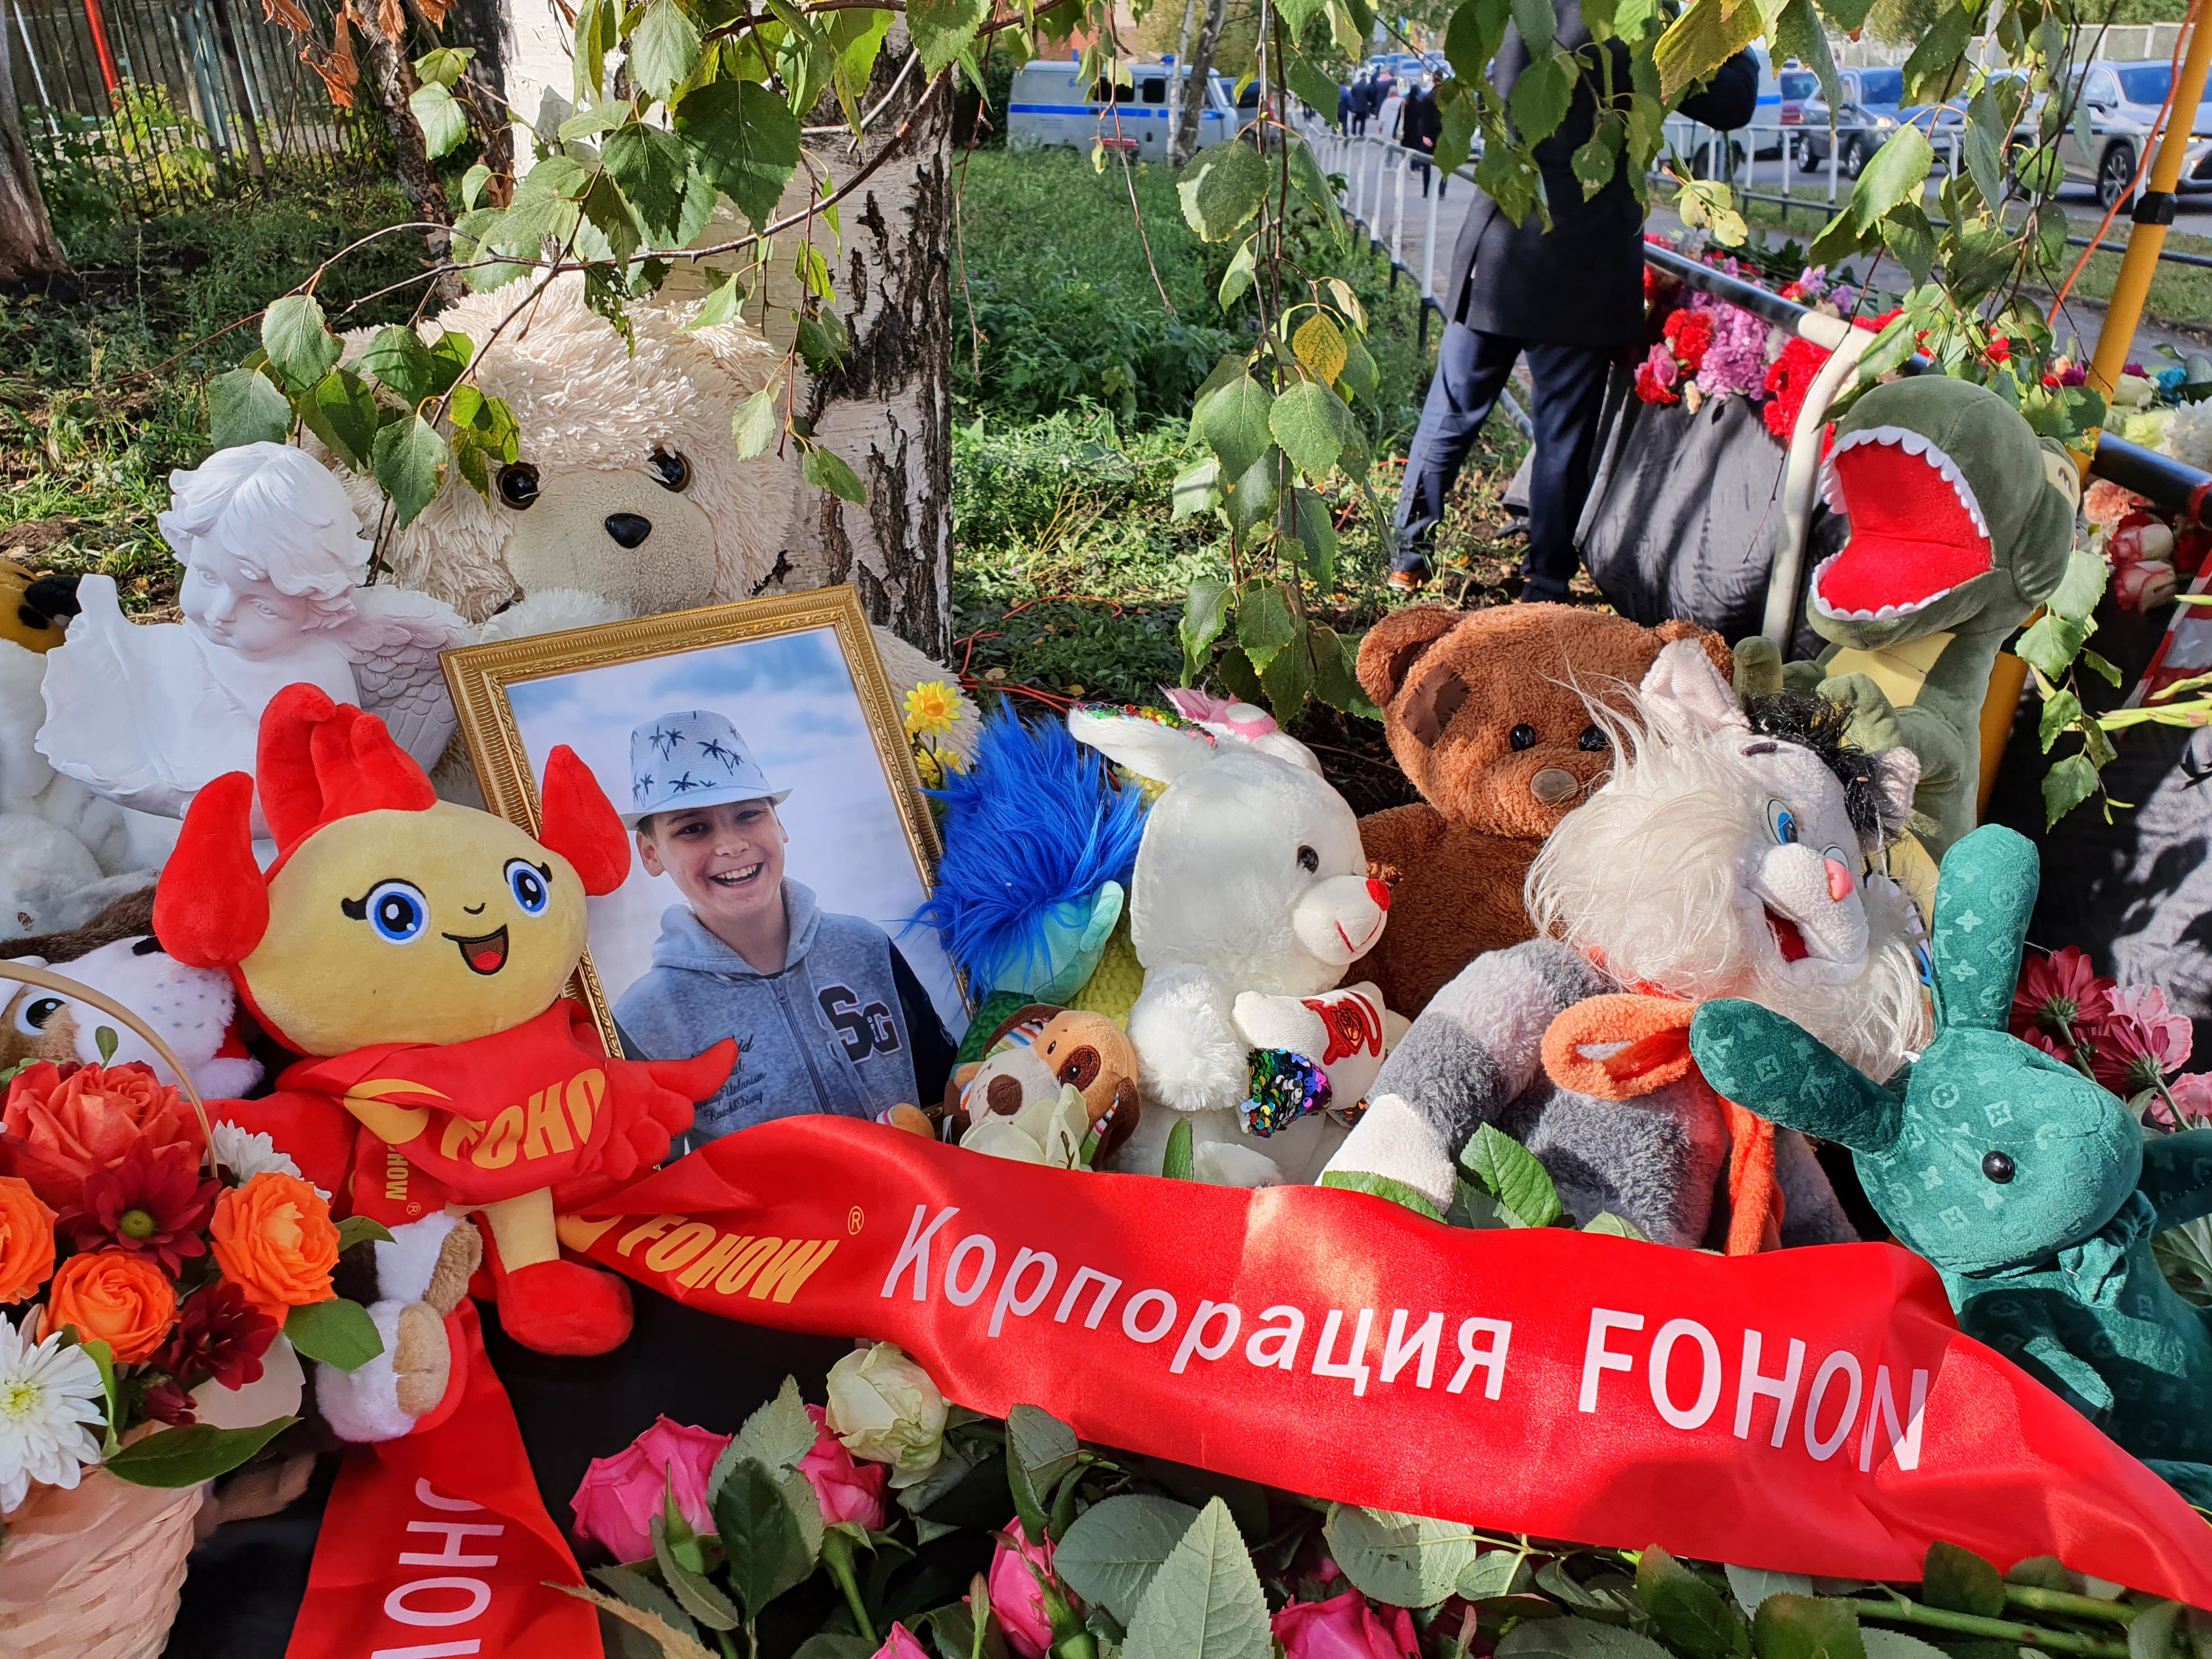 Погибли 11 детей и 6 взрослых. Всё о трагедии в Ижевске, где мужчина устроил стрельбу в школе